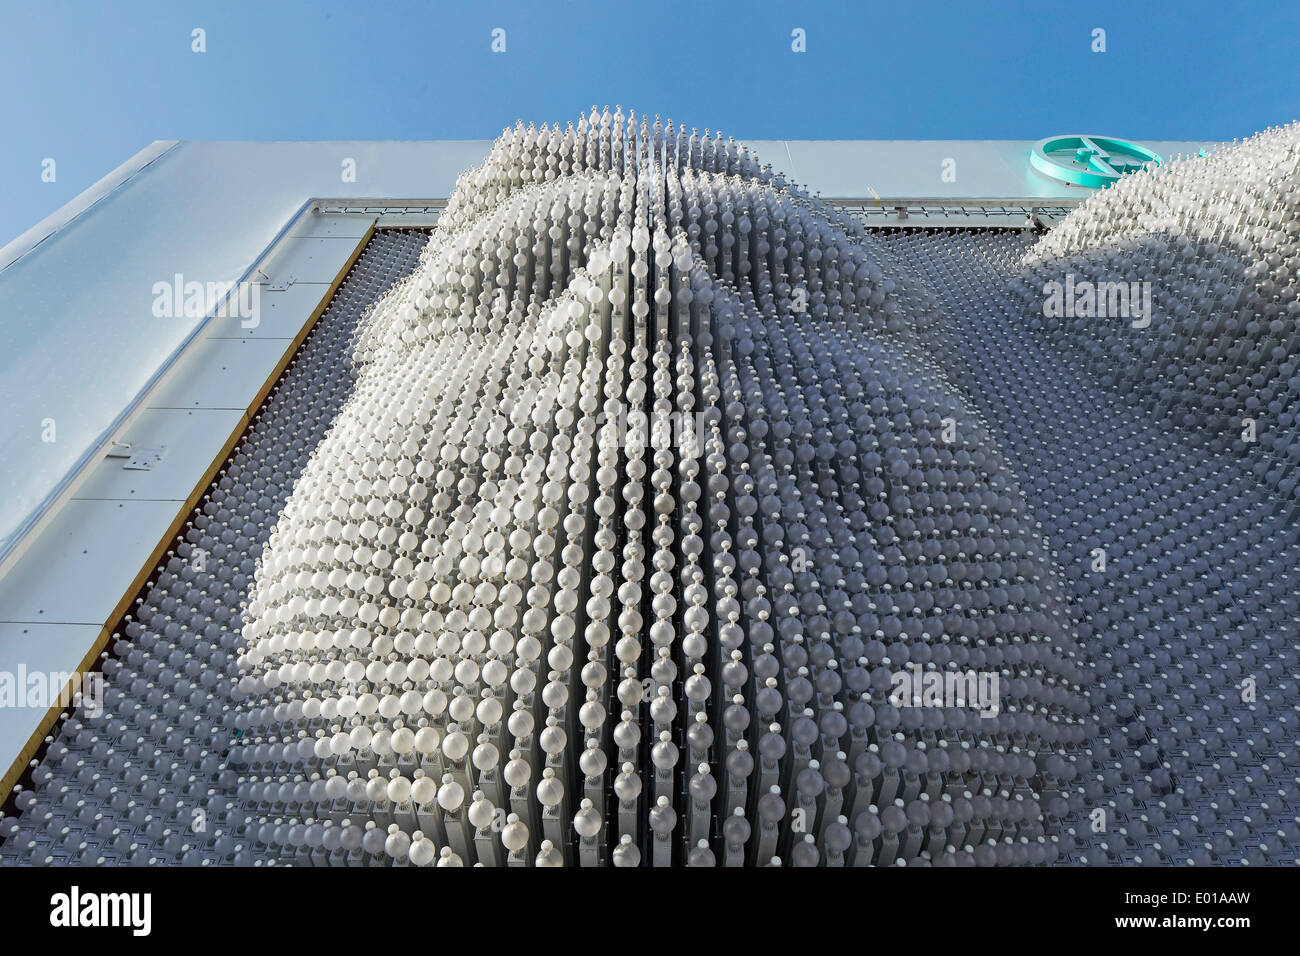 MegaFon, Winterspiele in Sotschi 2014 Sotschi, Russland. Architekt: Asif Khan, 2014. Detail der dreidimensionale Fläche Oberfläche. Stockfoto